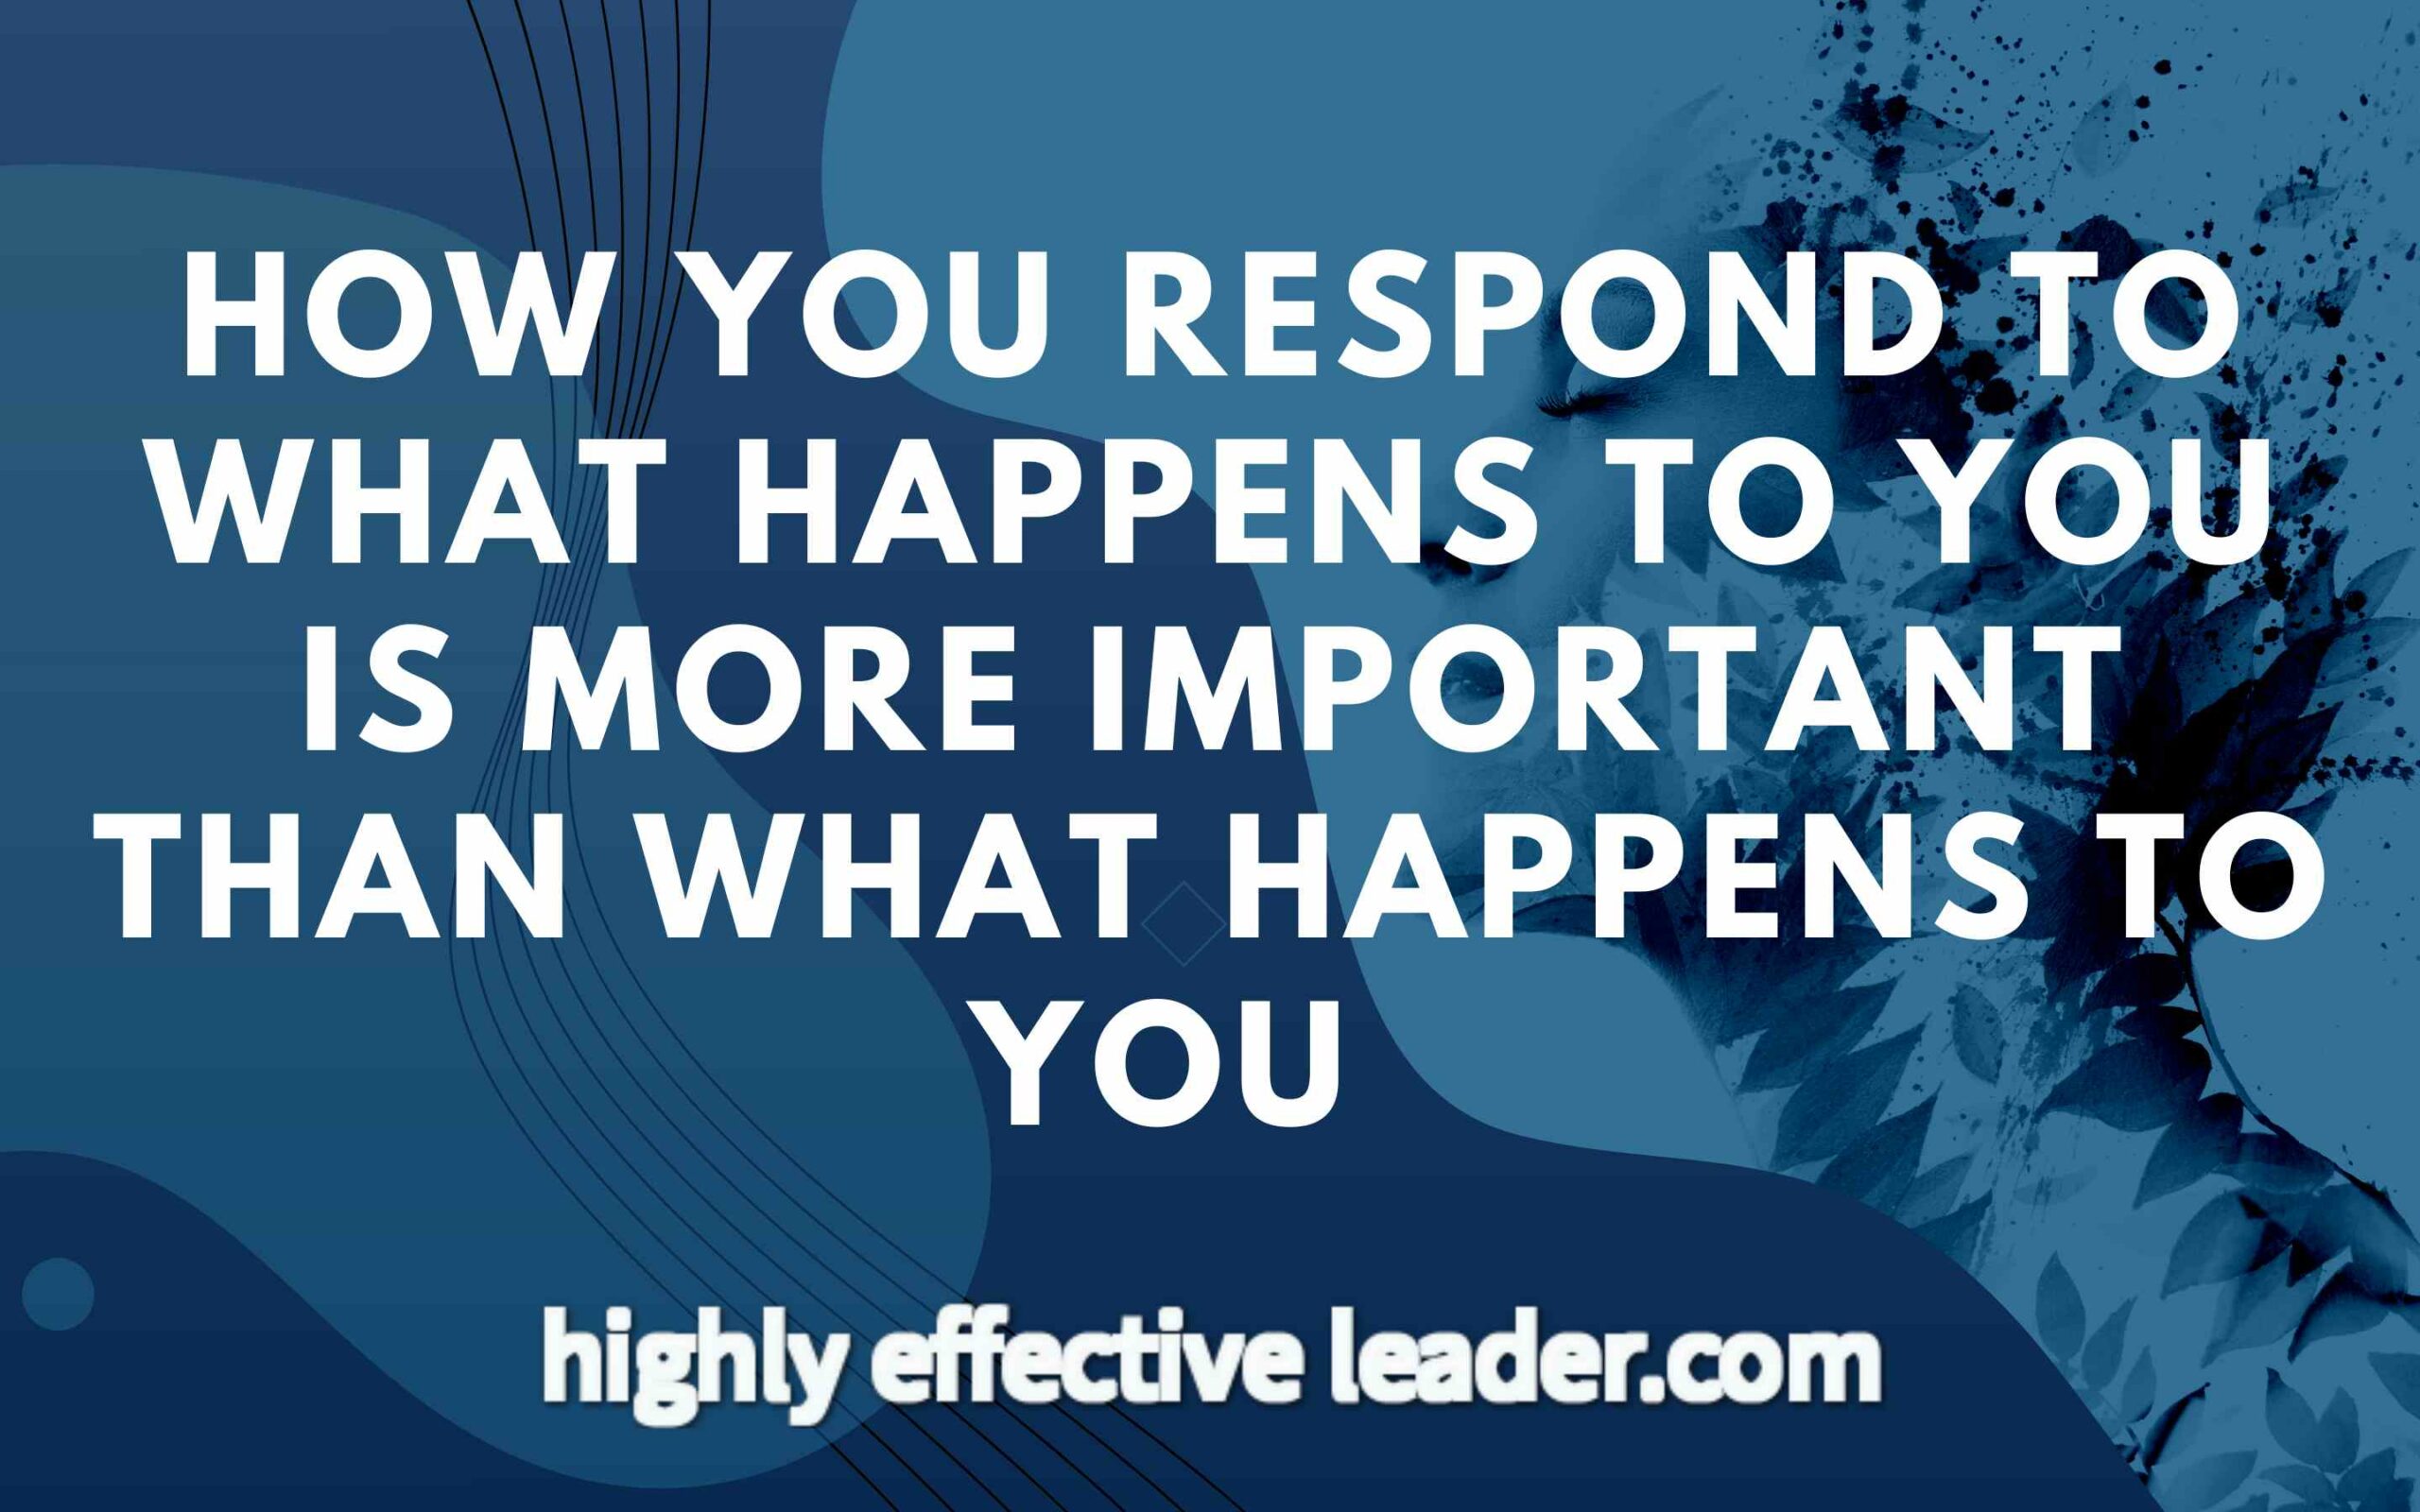 How Do You Respond?